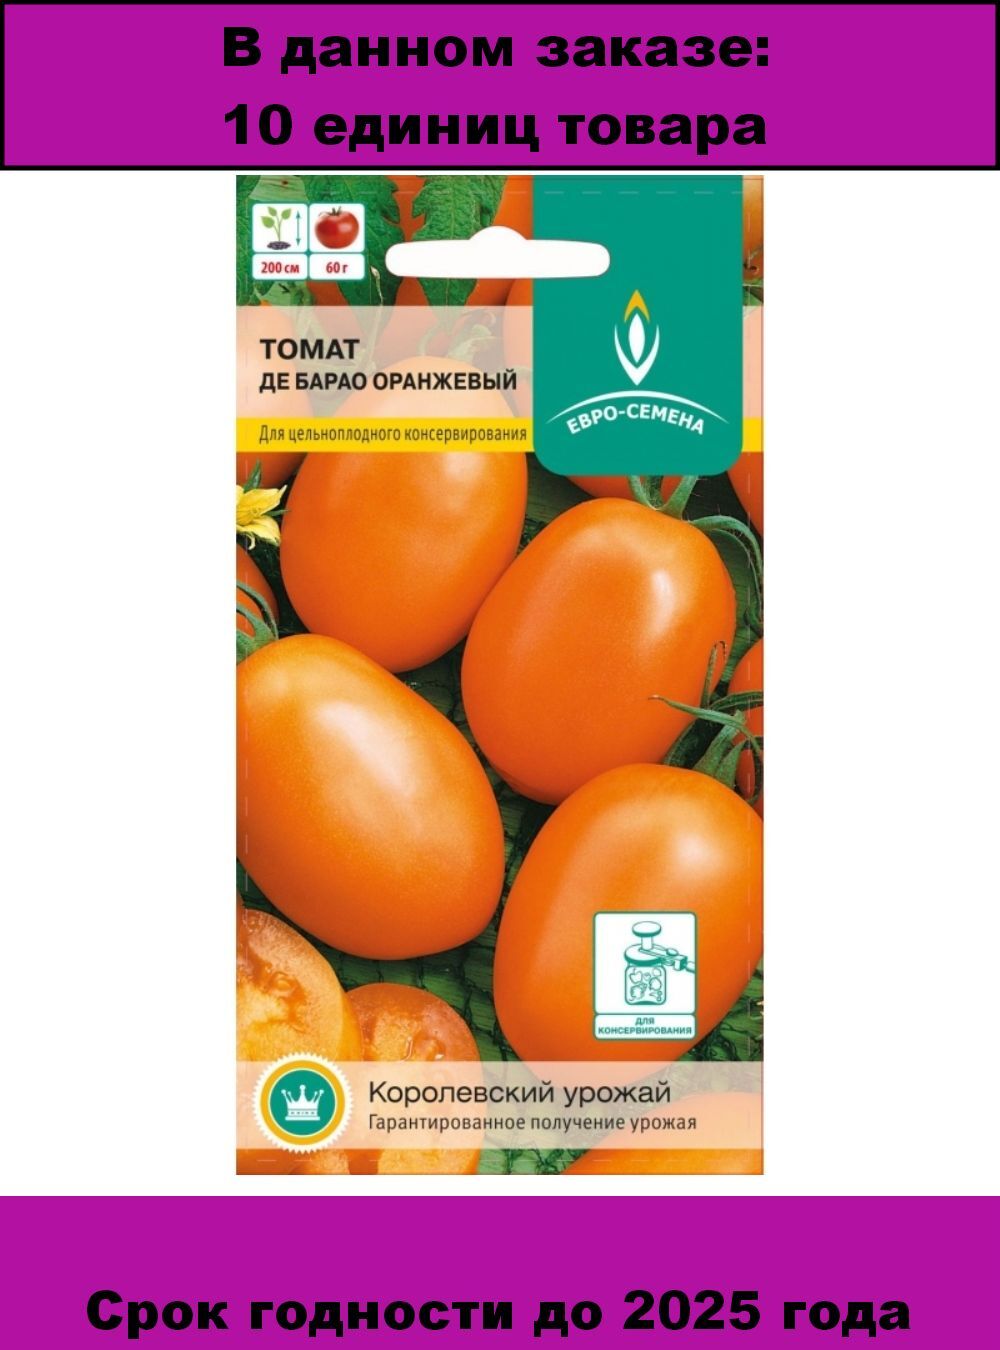 помидоры де барао фото отзывы описание